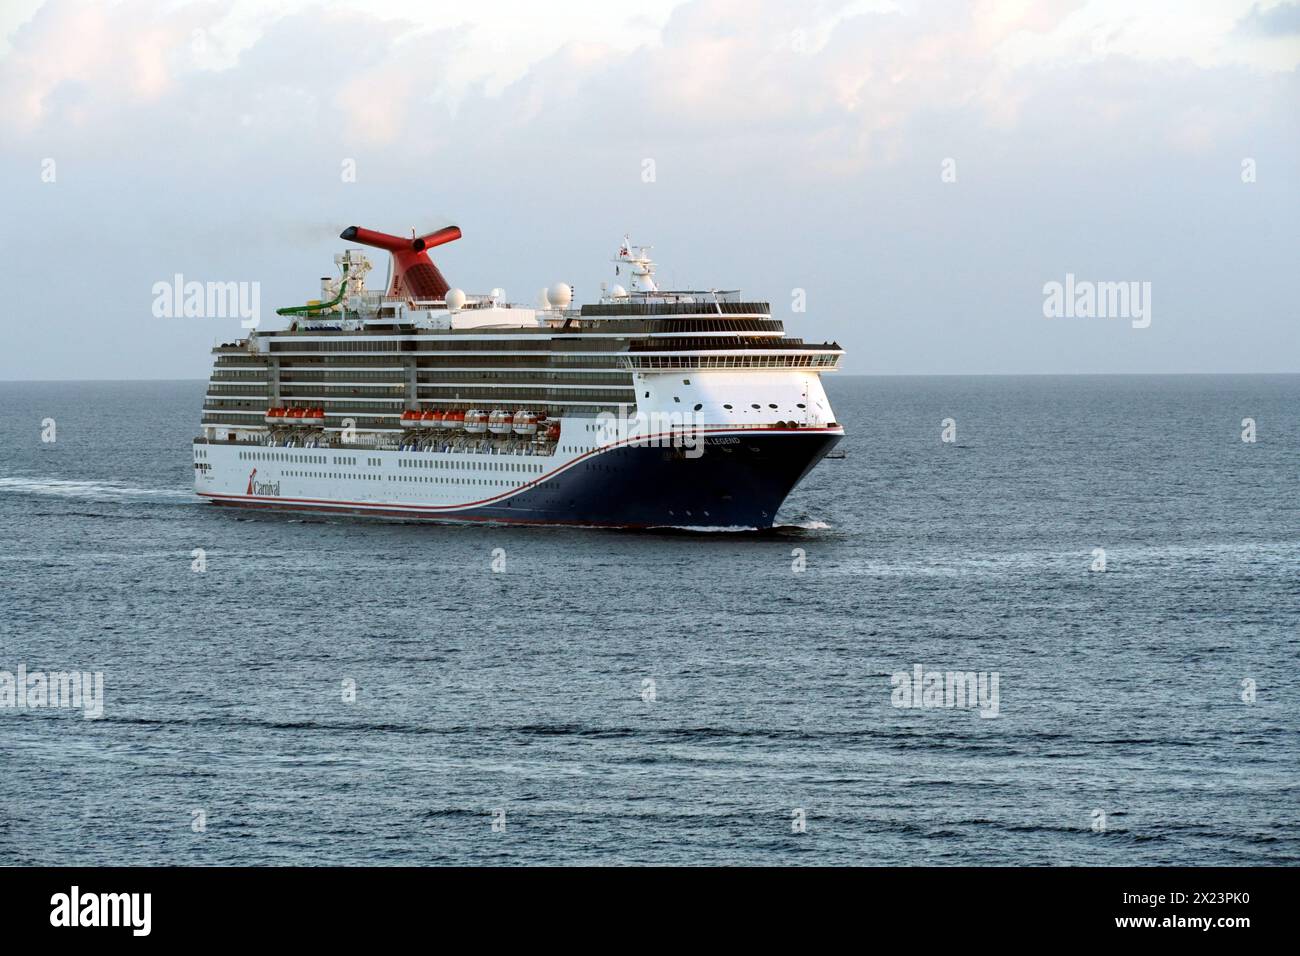 Navire de croisière Carnival Legend approchant le port de Nassau aux Bahamas qui est l'une des îles des Caraïbes. Banque D'Images